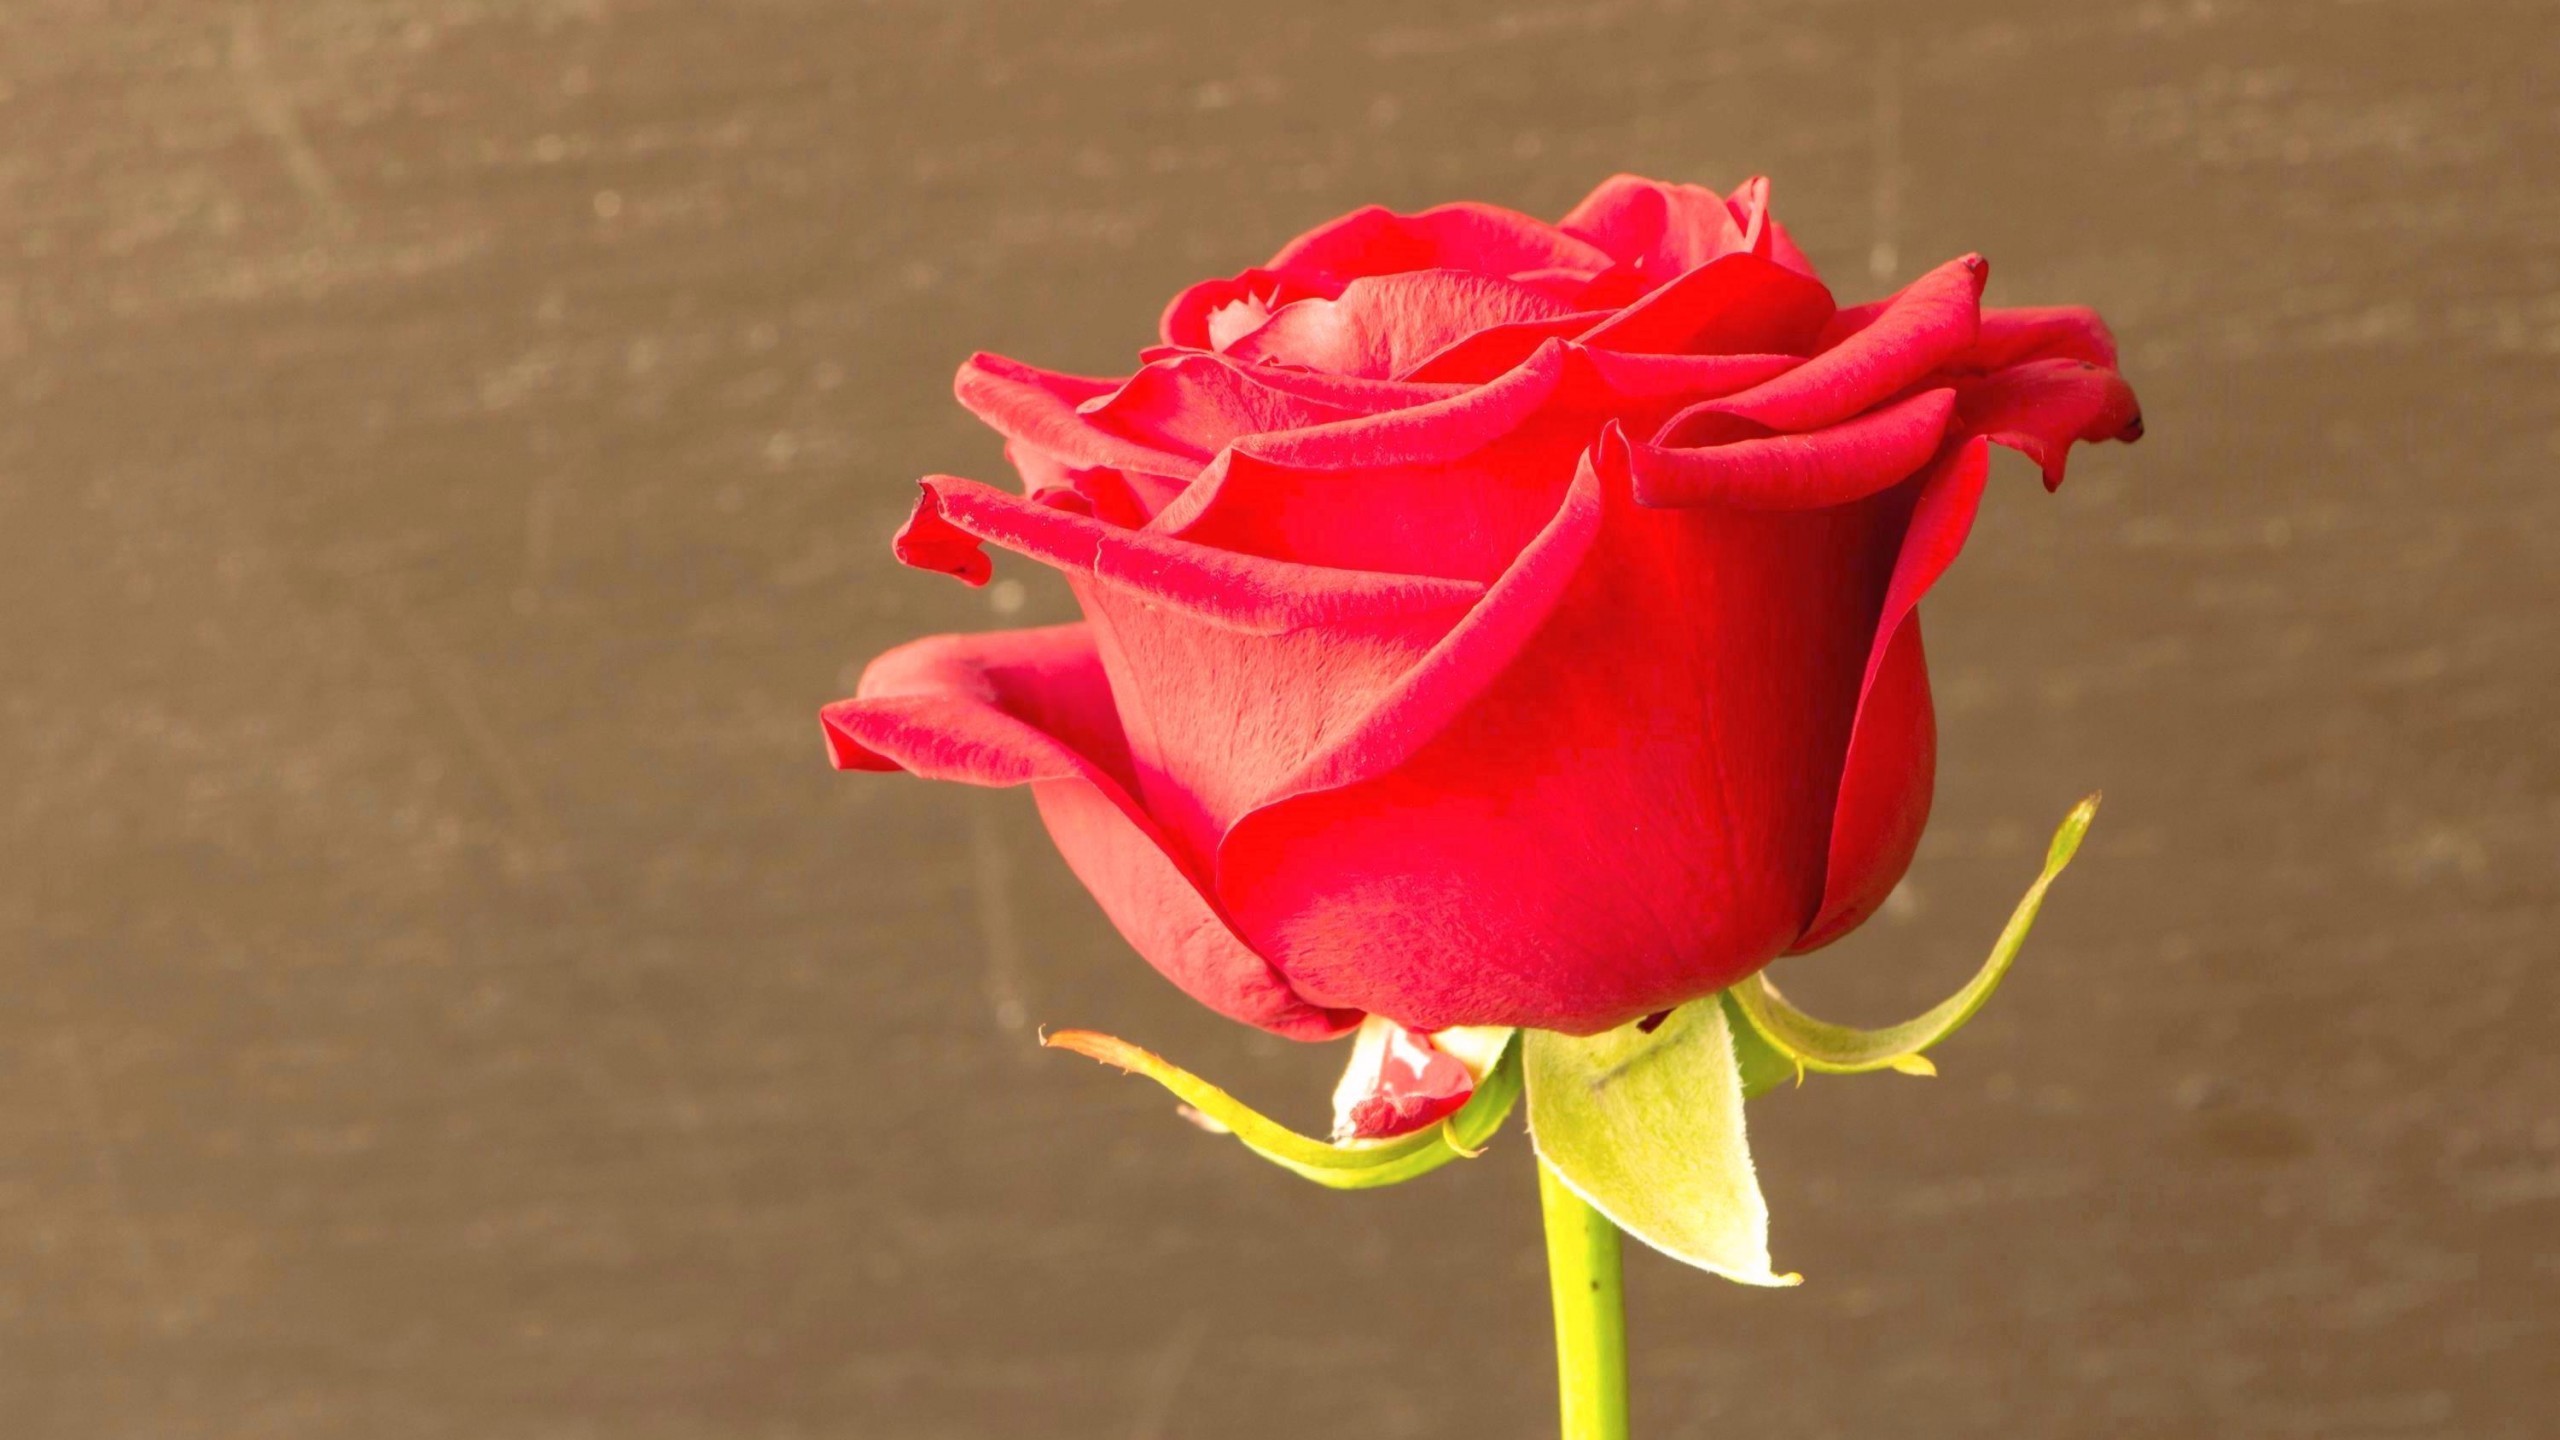 2560x1440 Top Beautiful Red Rose hd photos